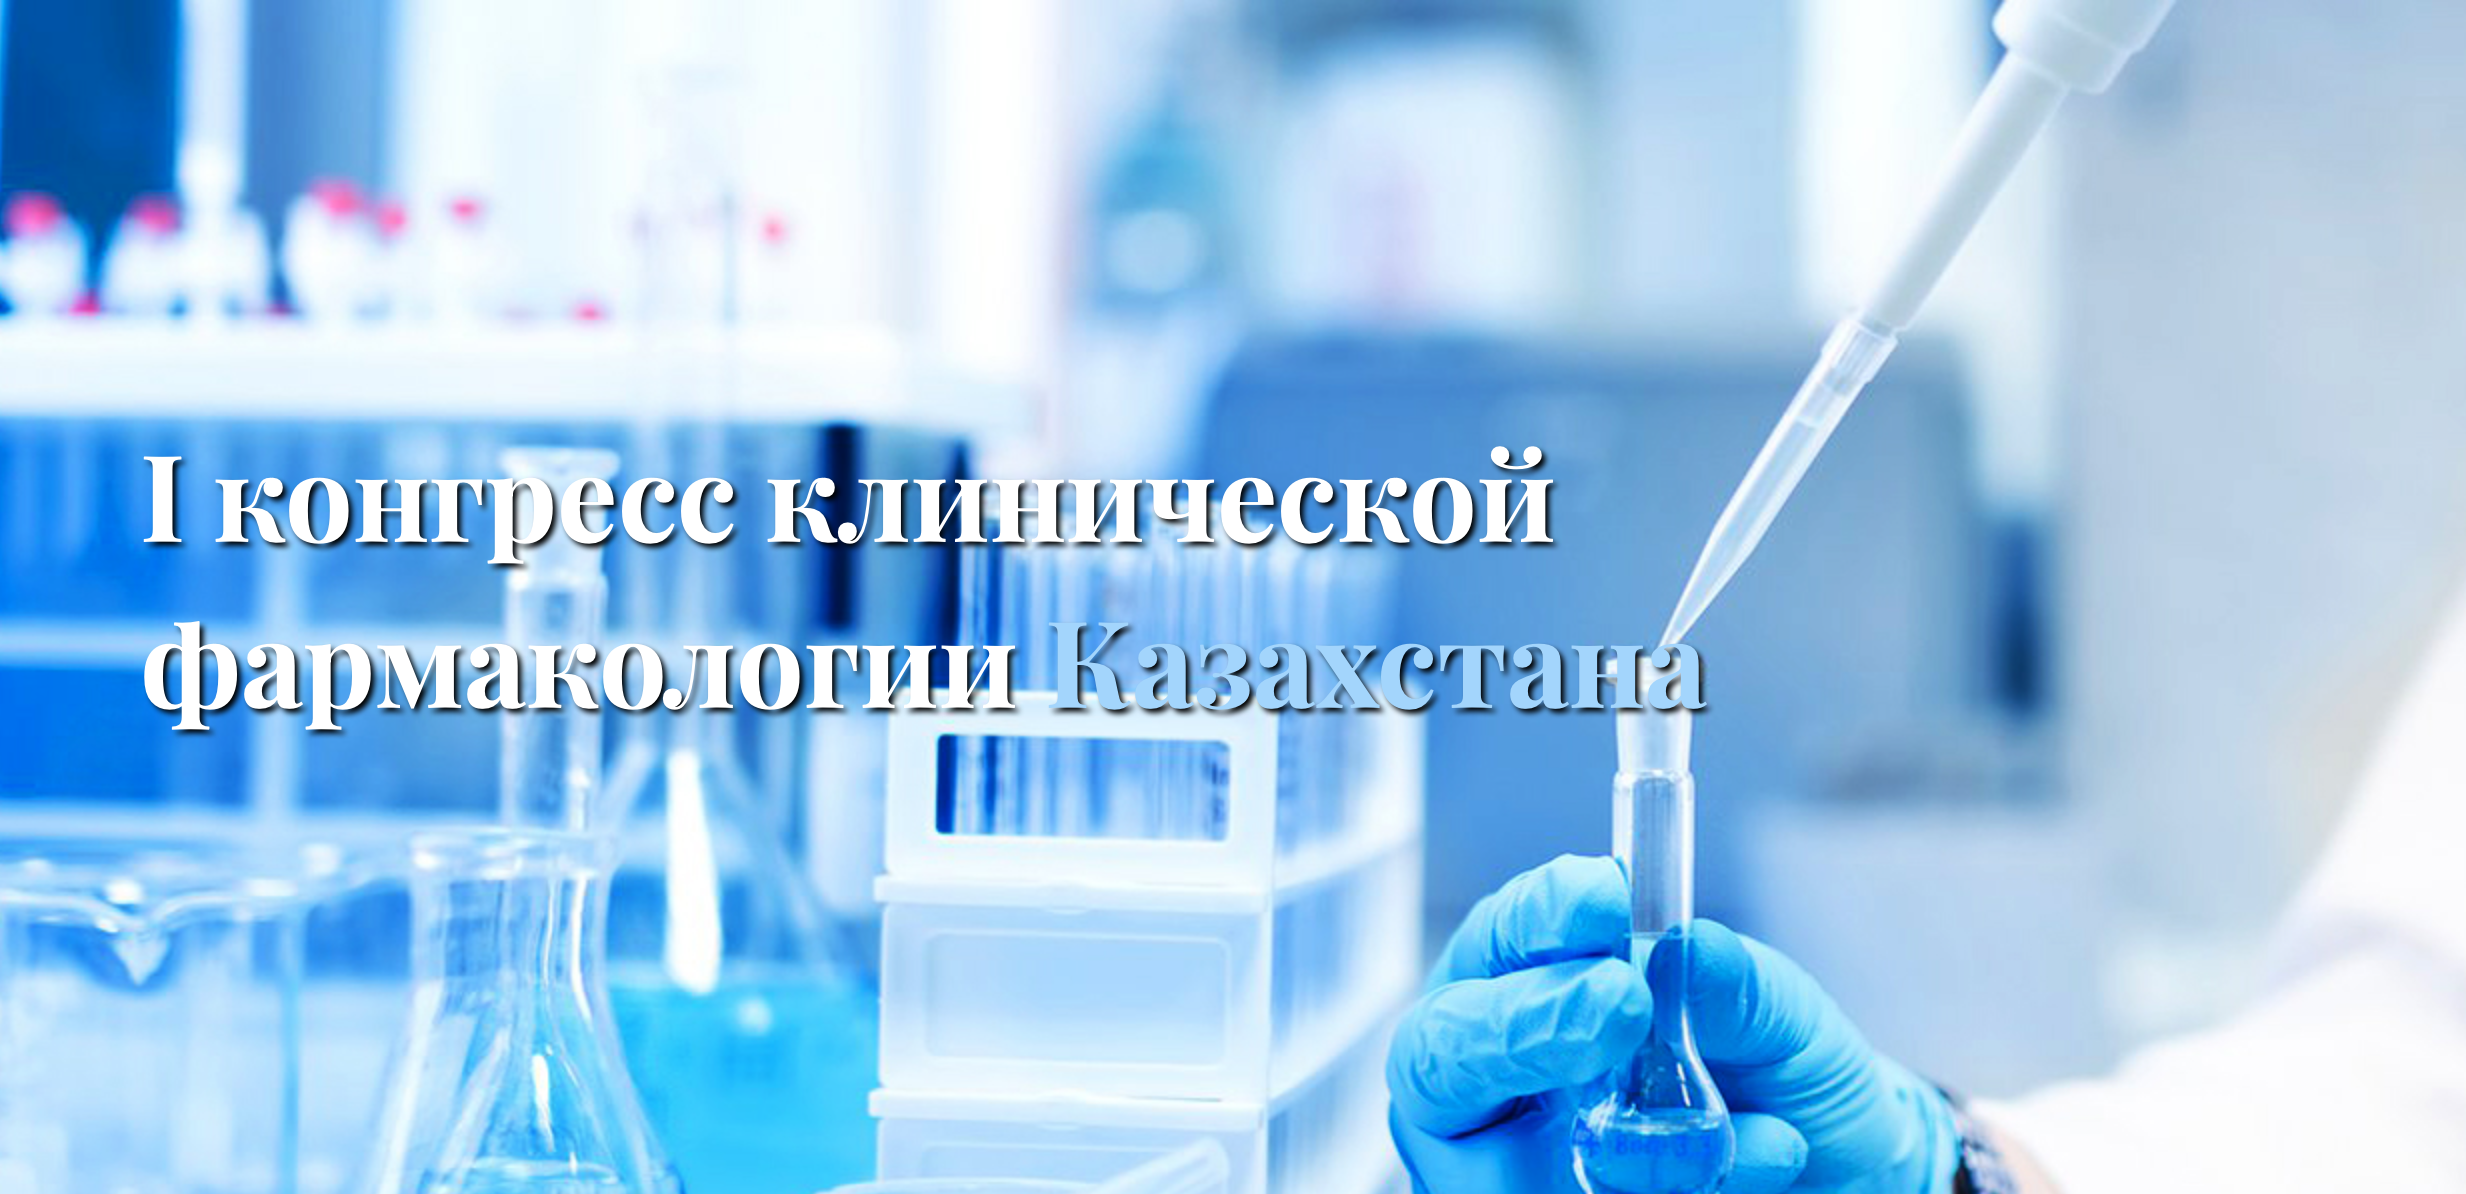 I Congreso de Farmacólogos Clínicos de Kazajstán